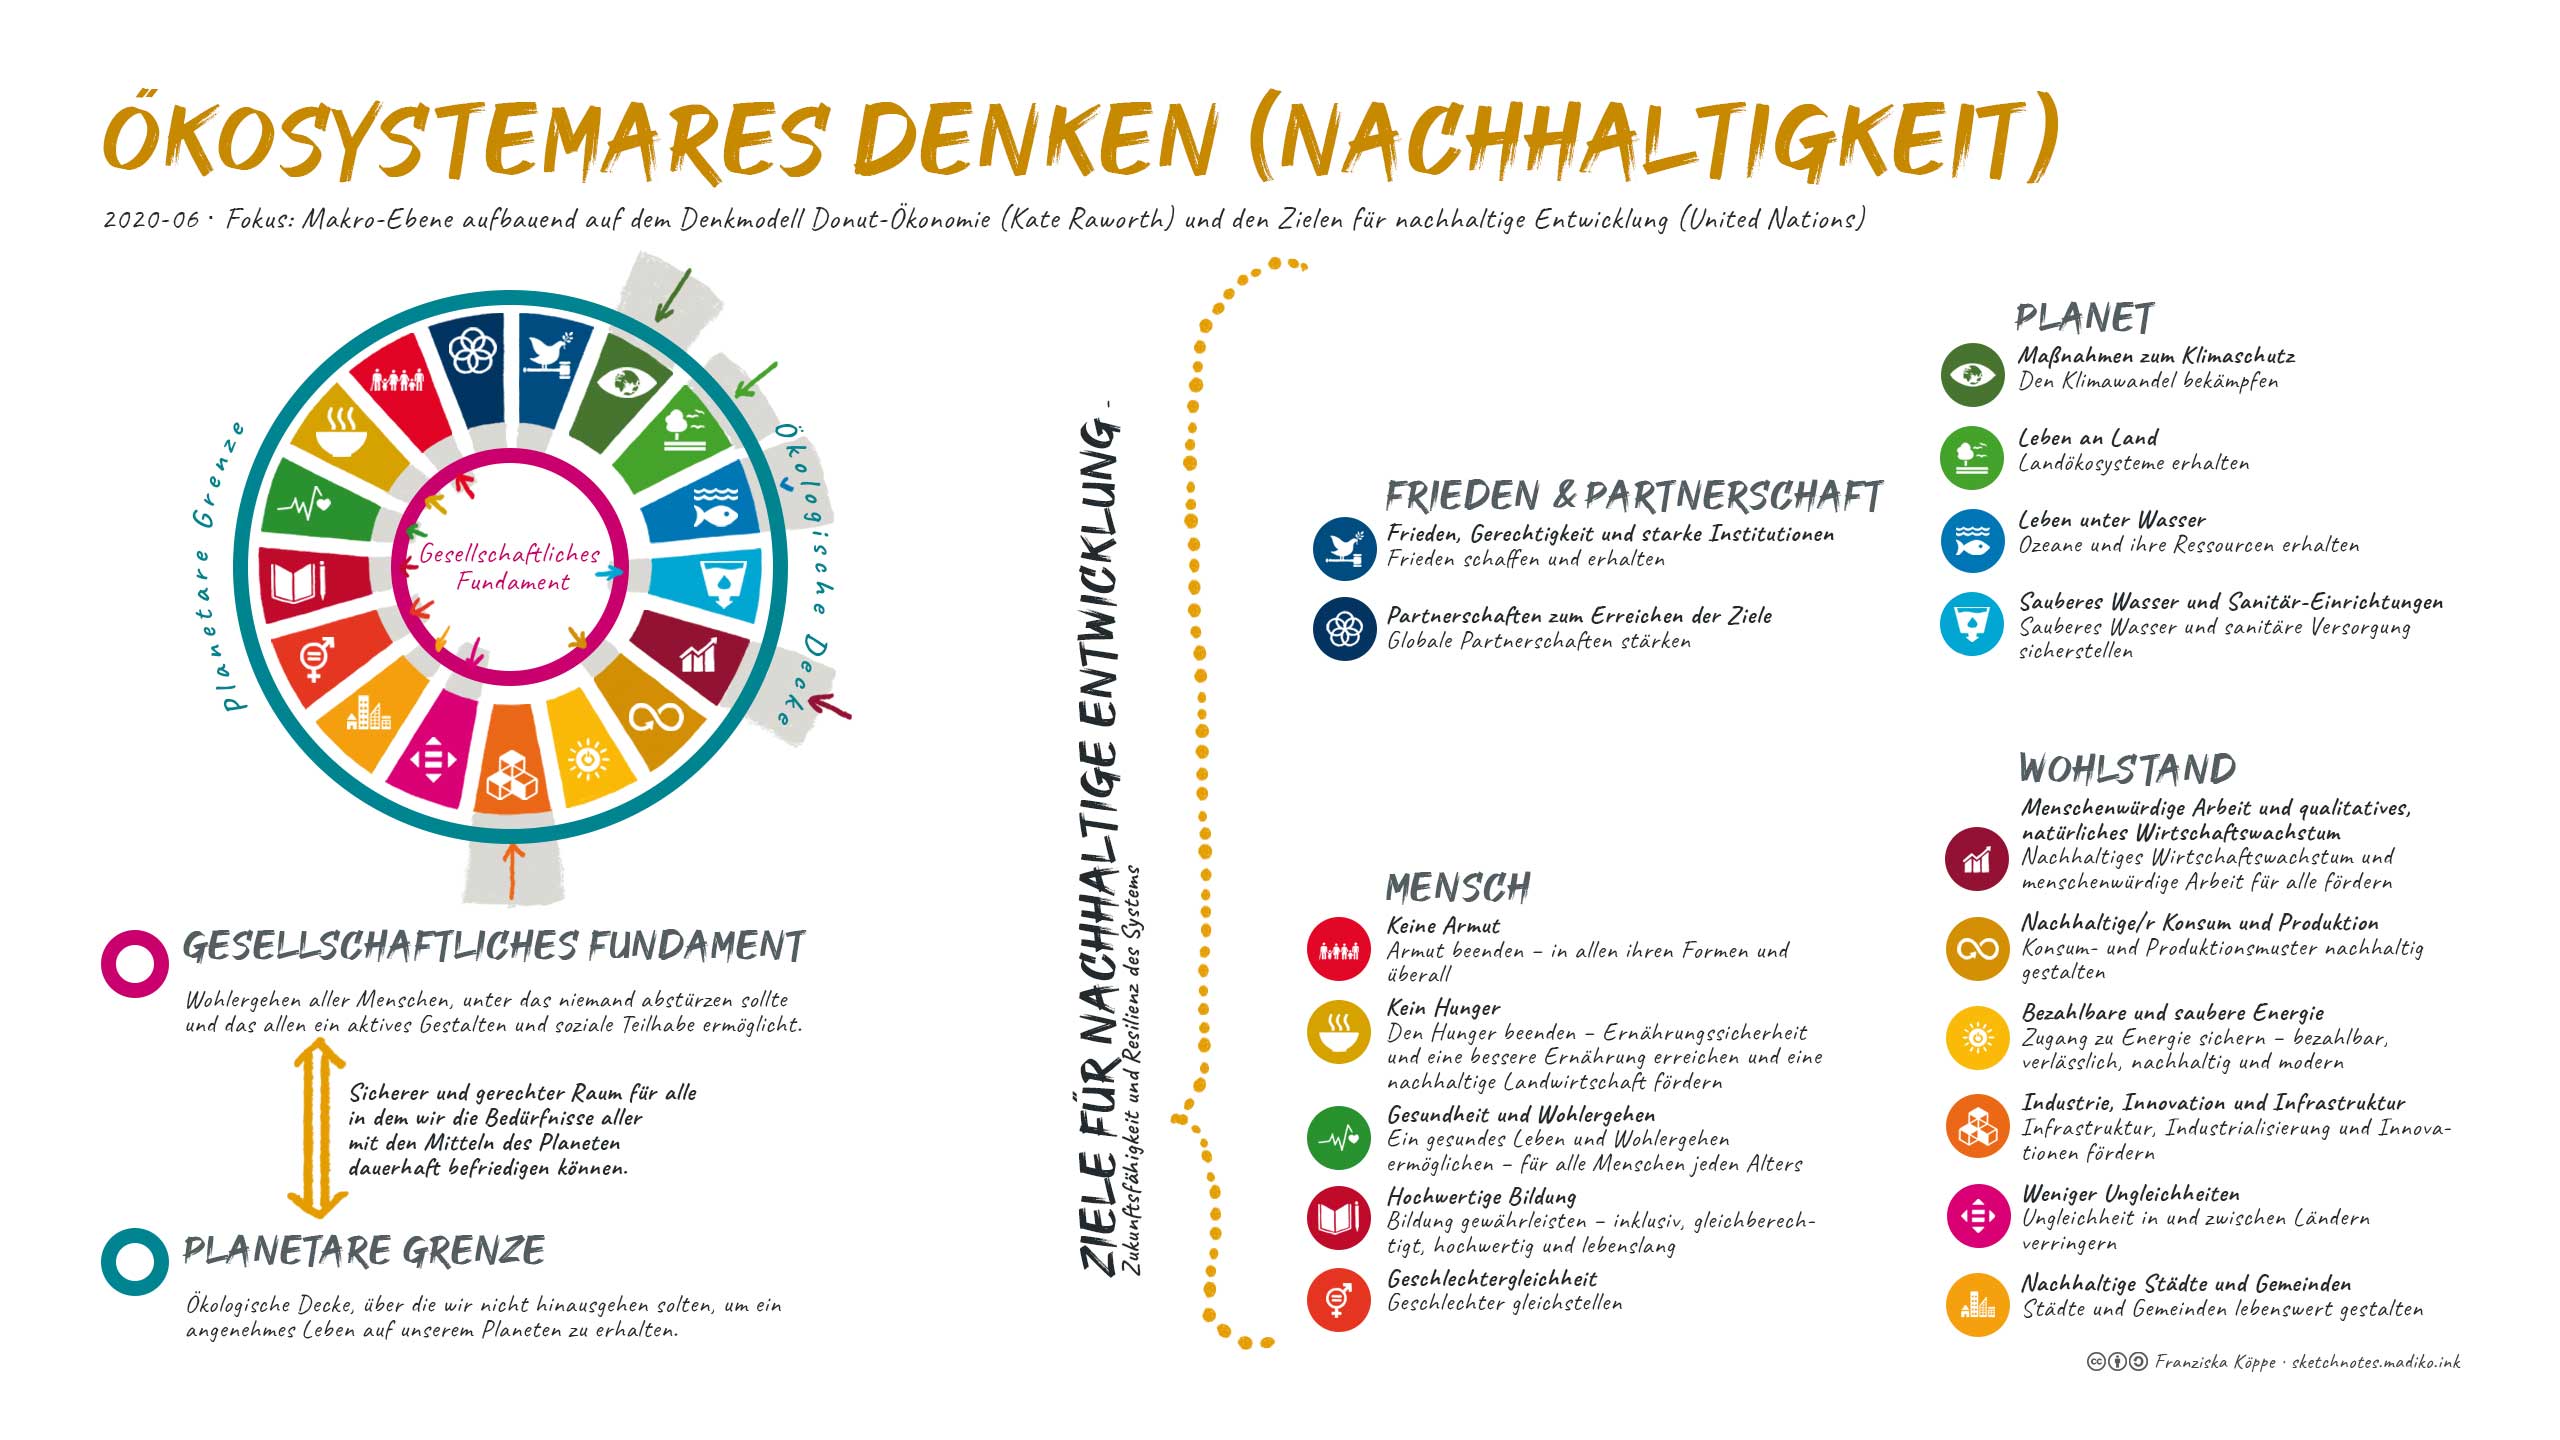 Ökosystemares Denken (Nachhaltigkeit) / Sketchnotes. Bild: cc Franziska Köppe | madiko aufbauend auf dem Denkmodell Donut-Ökonomie (Kate Raworth) und den Zielen für nachhaltige Entwicklung (United Nations)